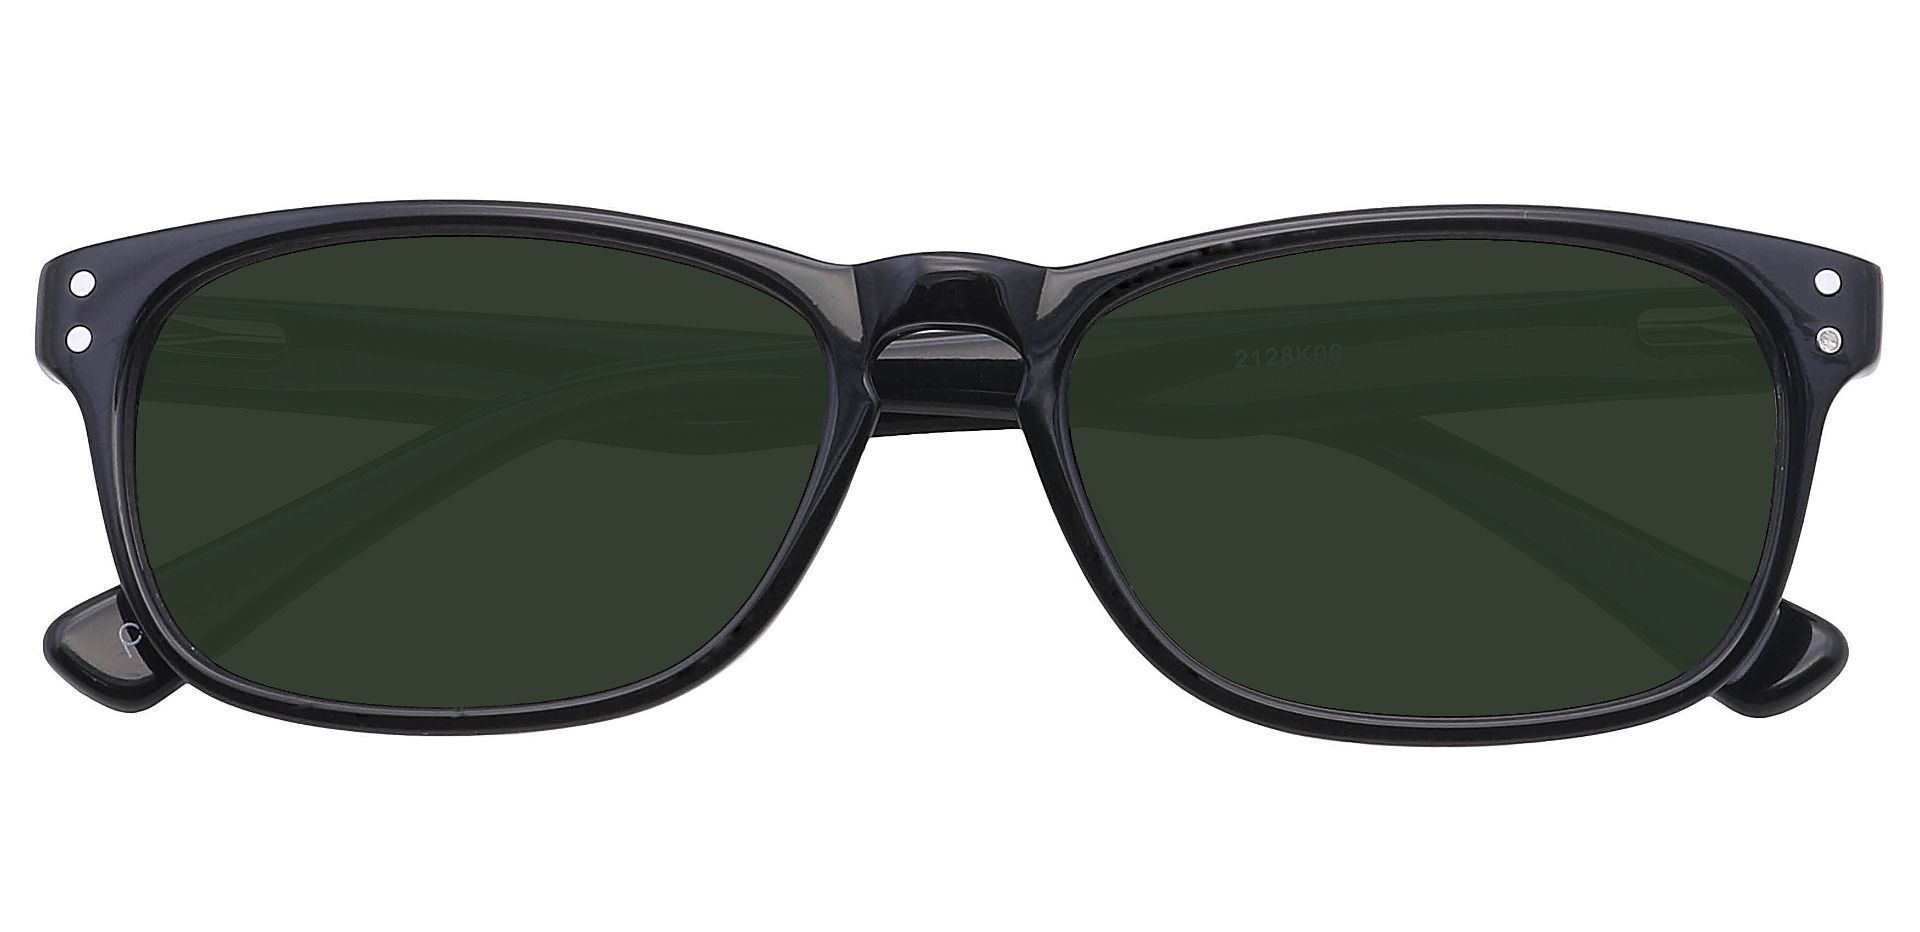 Morris Rectangle Progressive Sunglasses - Black Frame With Green Lenses